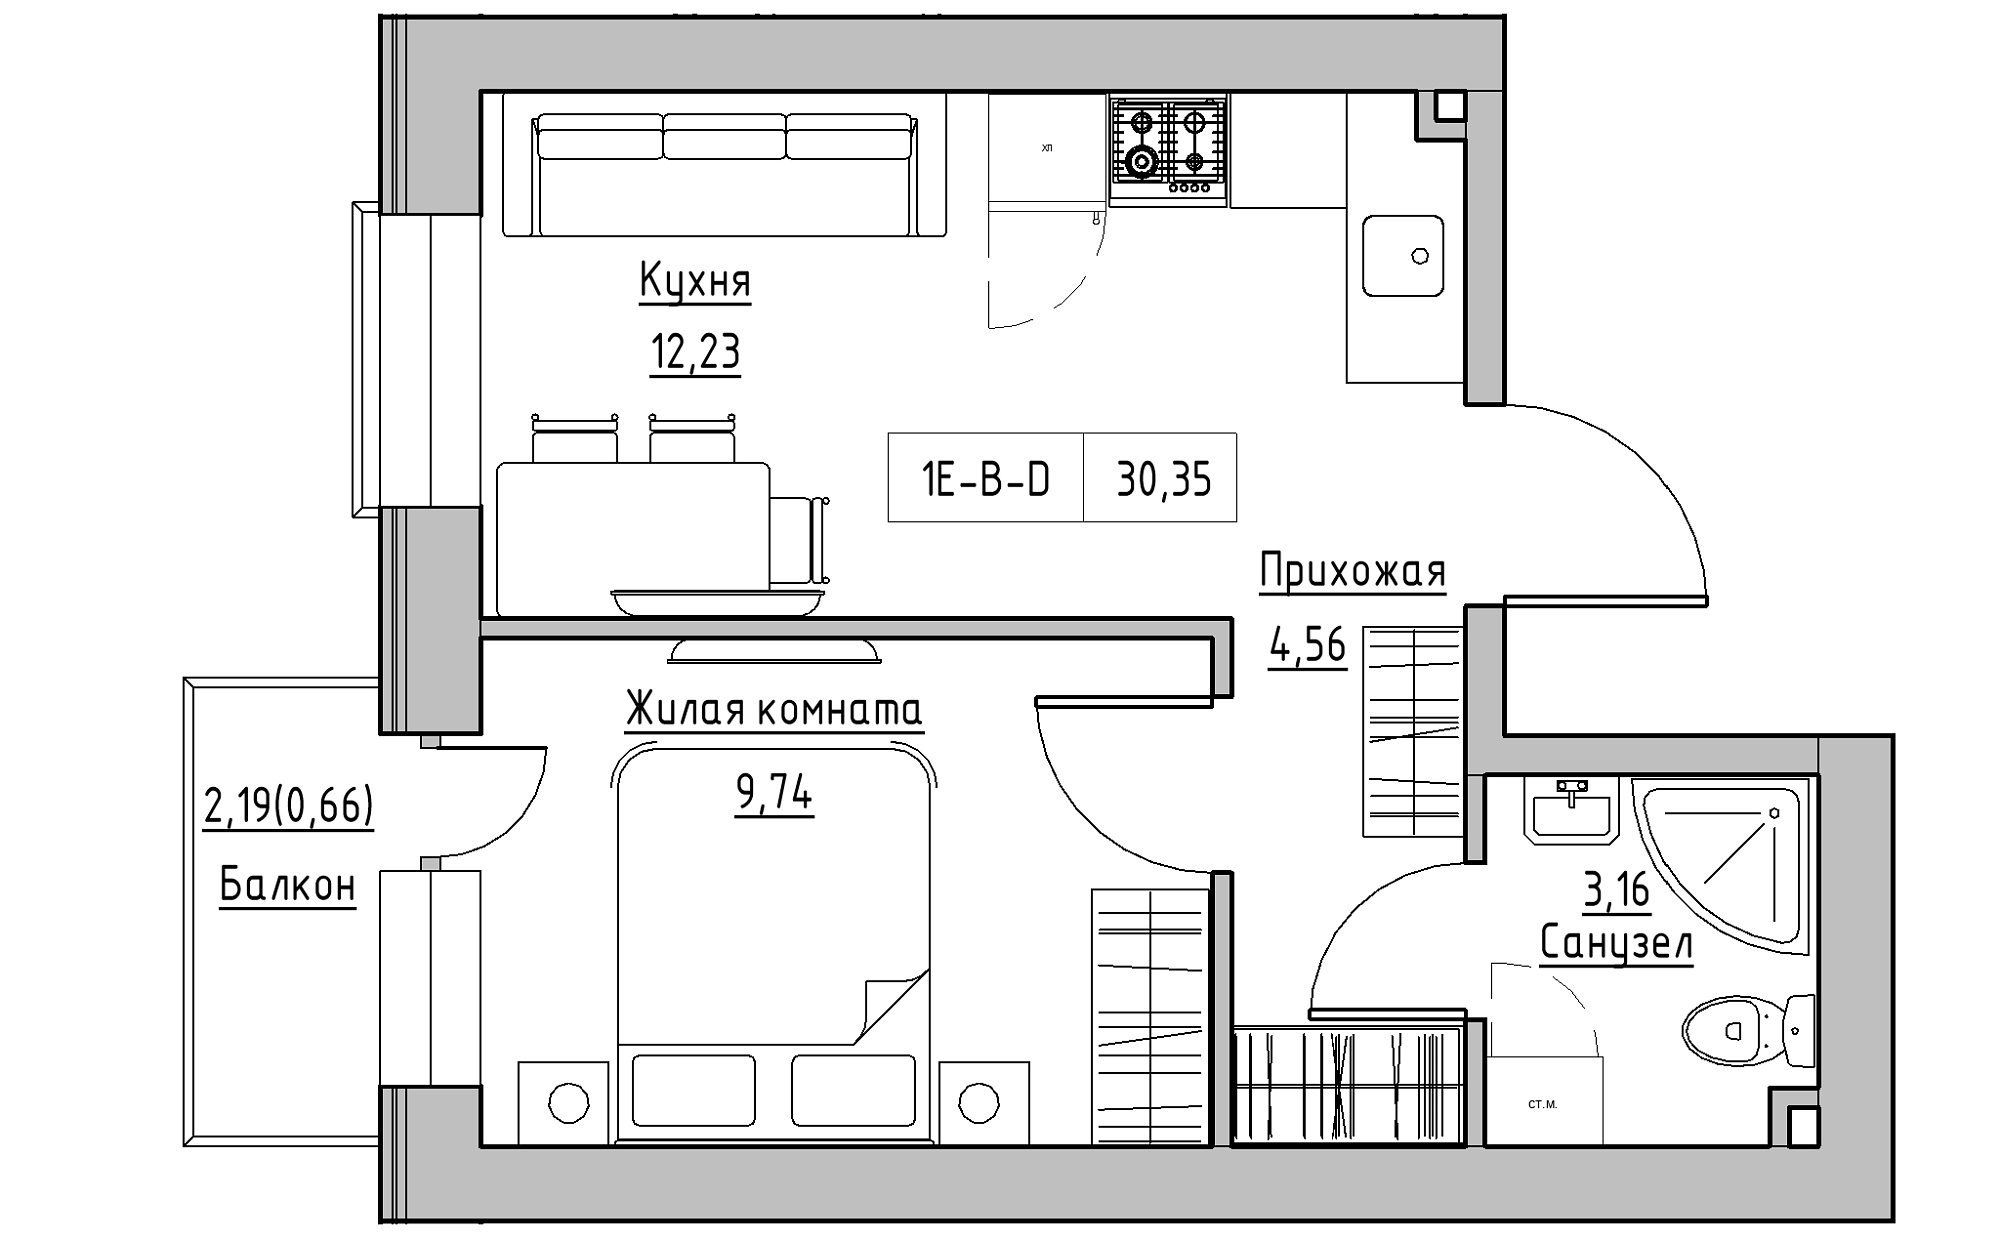 Планування 1-к квартира площею 30.35м2, KS-022-03/0012.